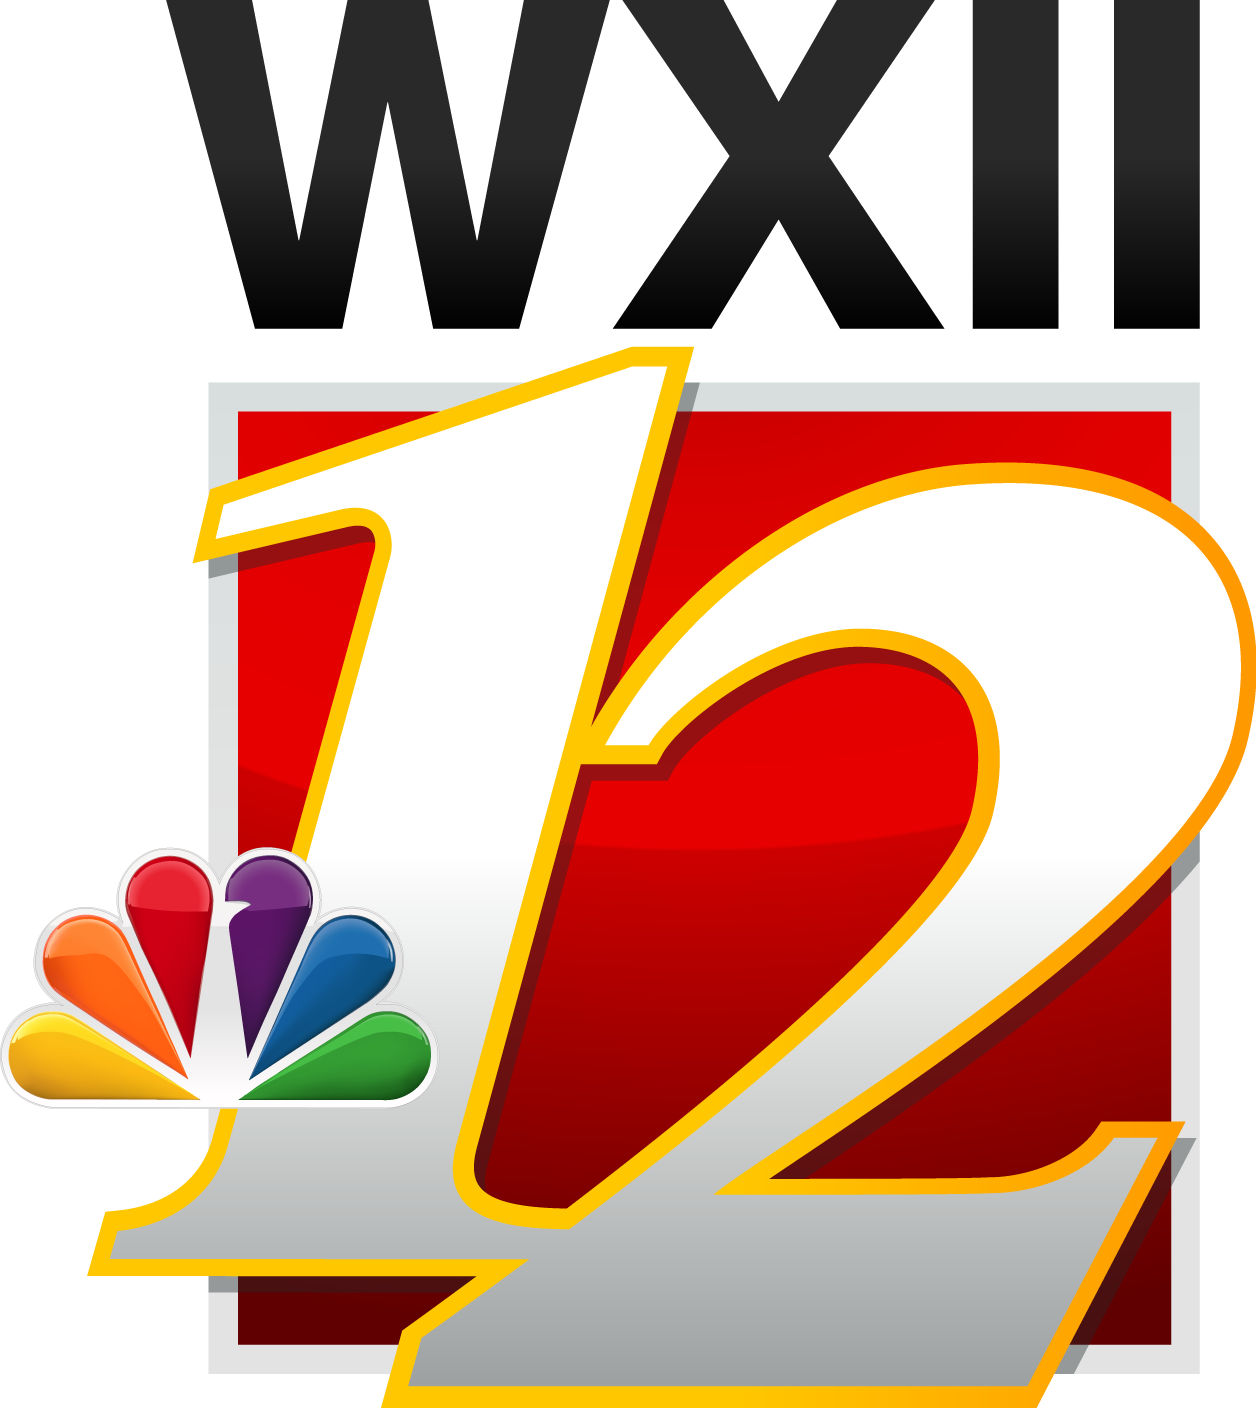 4e. WXII (Media Partner)